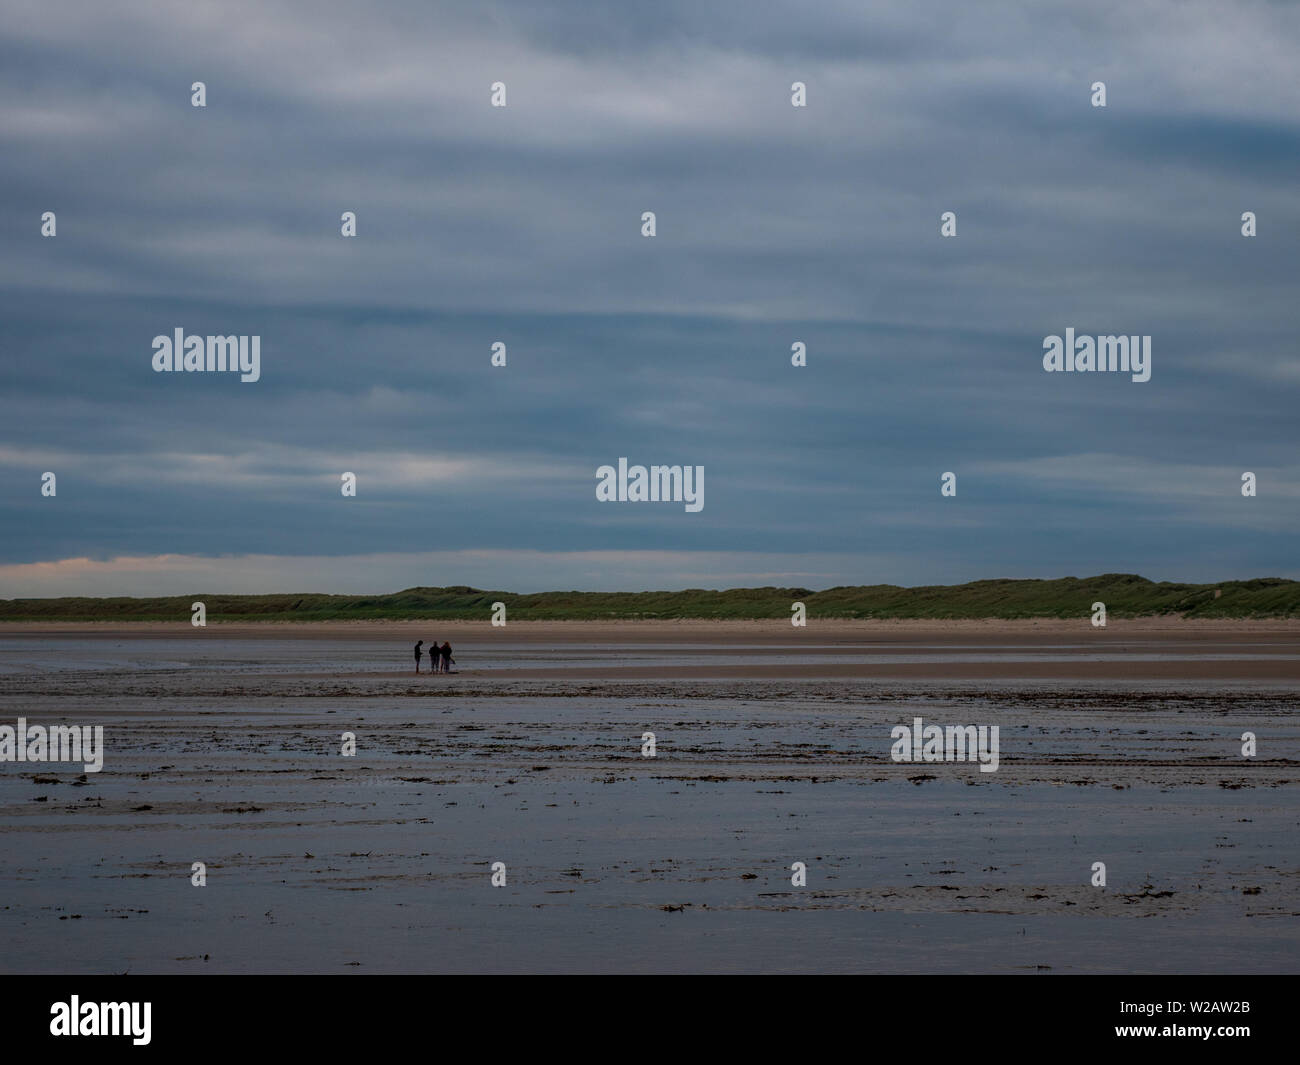 Rhosneigr, Wales, UK - A far off group of people walk along Traeth Cymyran beach. Stock Photo